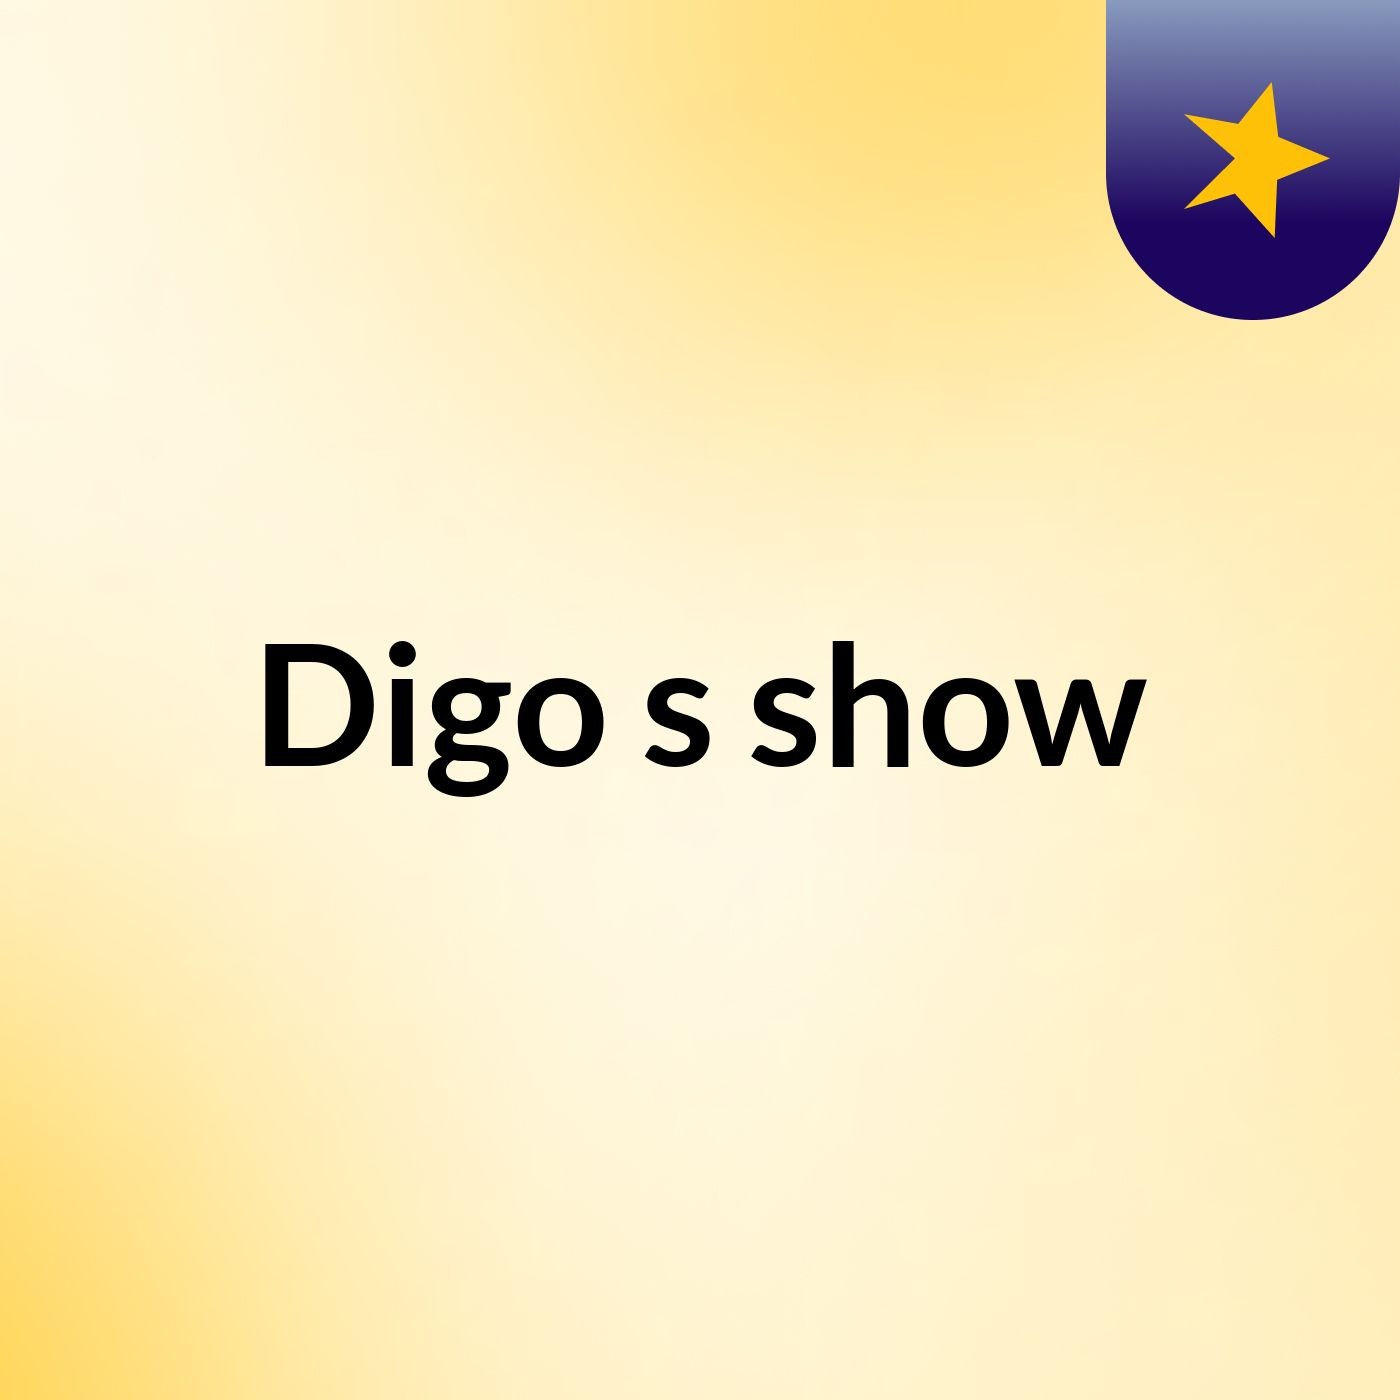 Digo's show